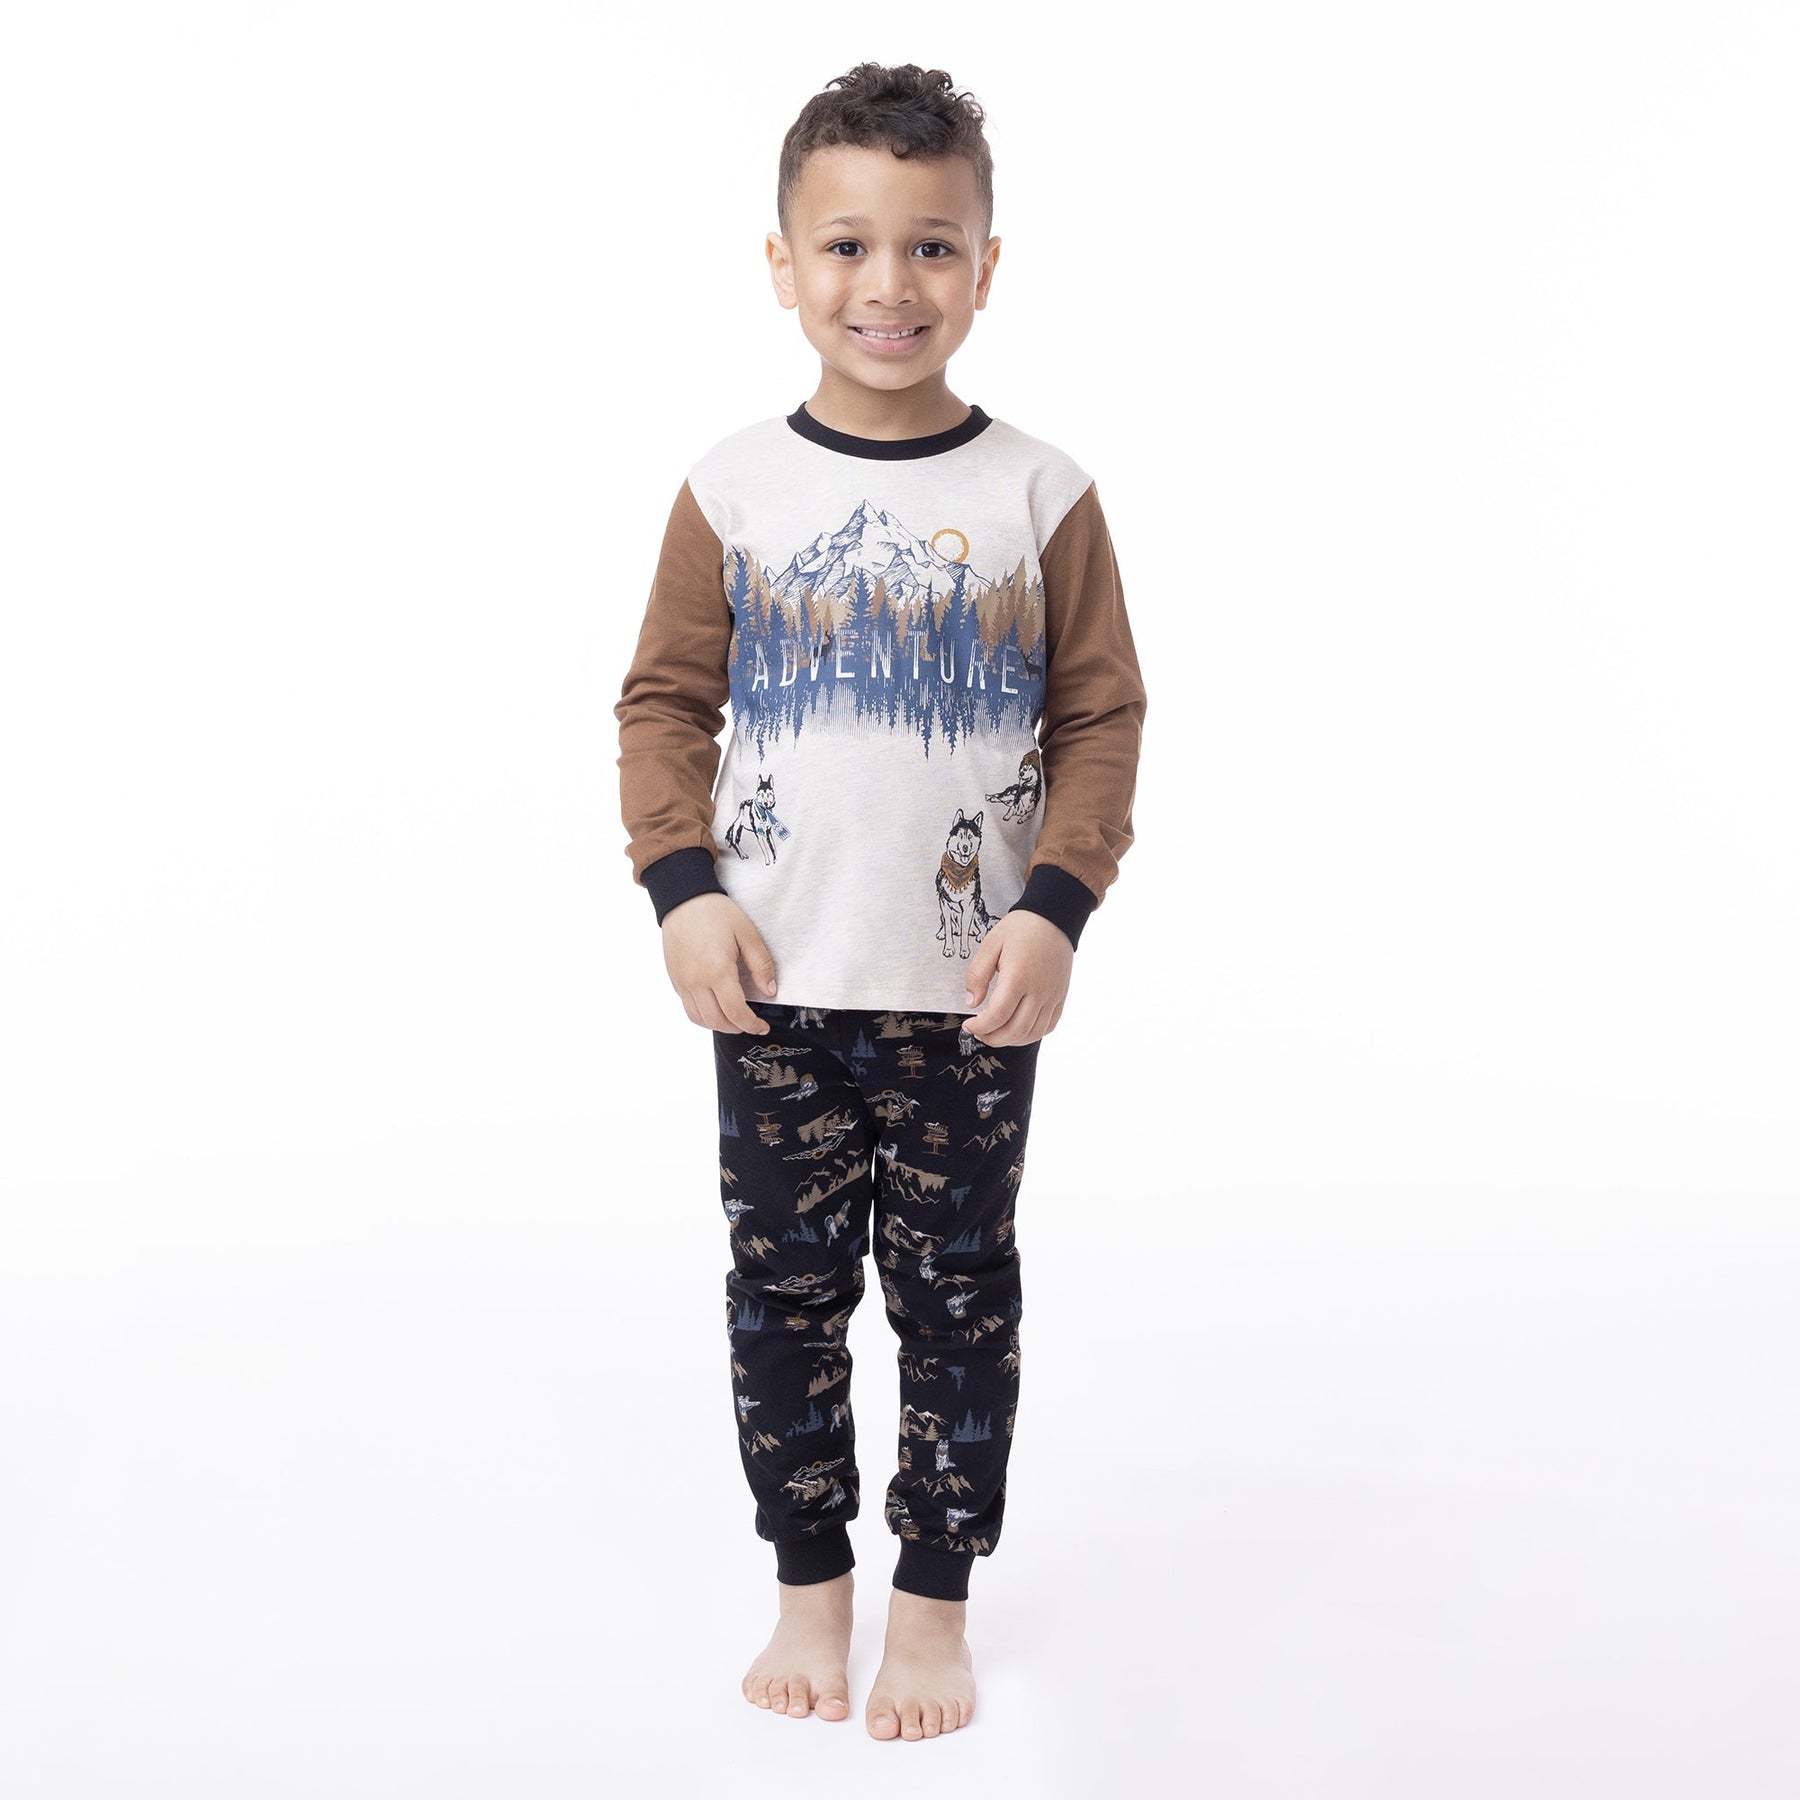 Pyjama pour enfant garçon par Nanö | F23P05 Beige chiné | Boutique Flos, vêtements mode pour bébés et enfants